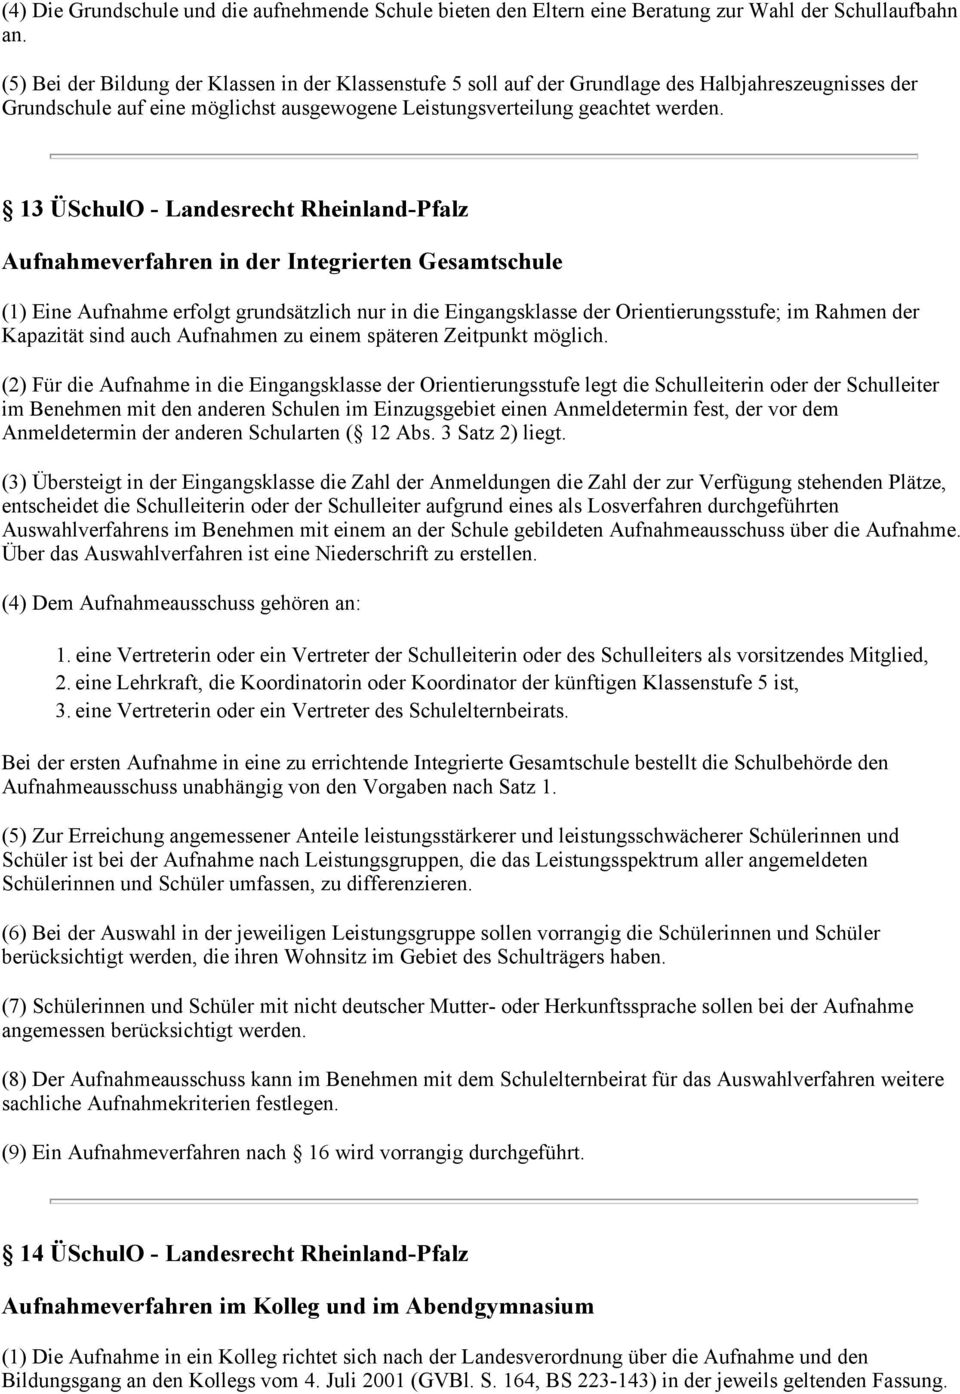 13 ÜSchulO - Landesrecht Rheinland-Pfalz Aufnahmeverfahren in der Integrierten Gesamtschule (1) Eine Aufnahme erfolgt grundsätzlich nur in die Eingangsklasse der Orientierungsstufe; im Rahmen der